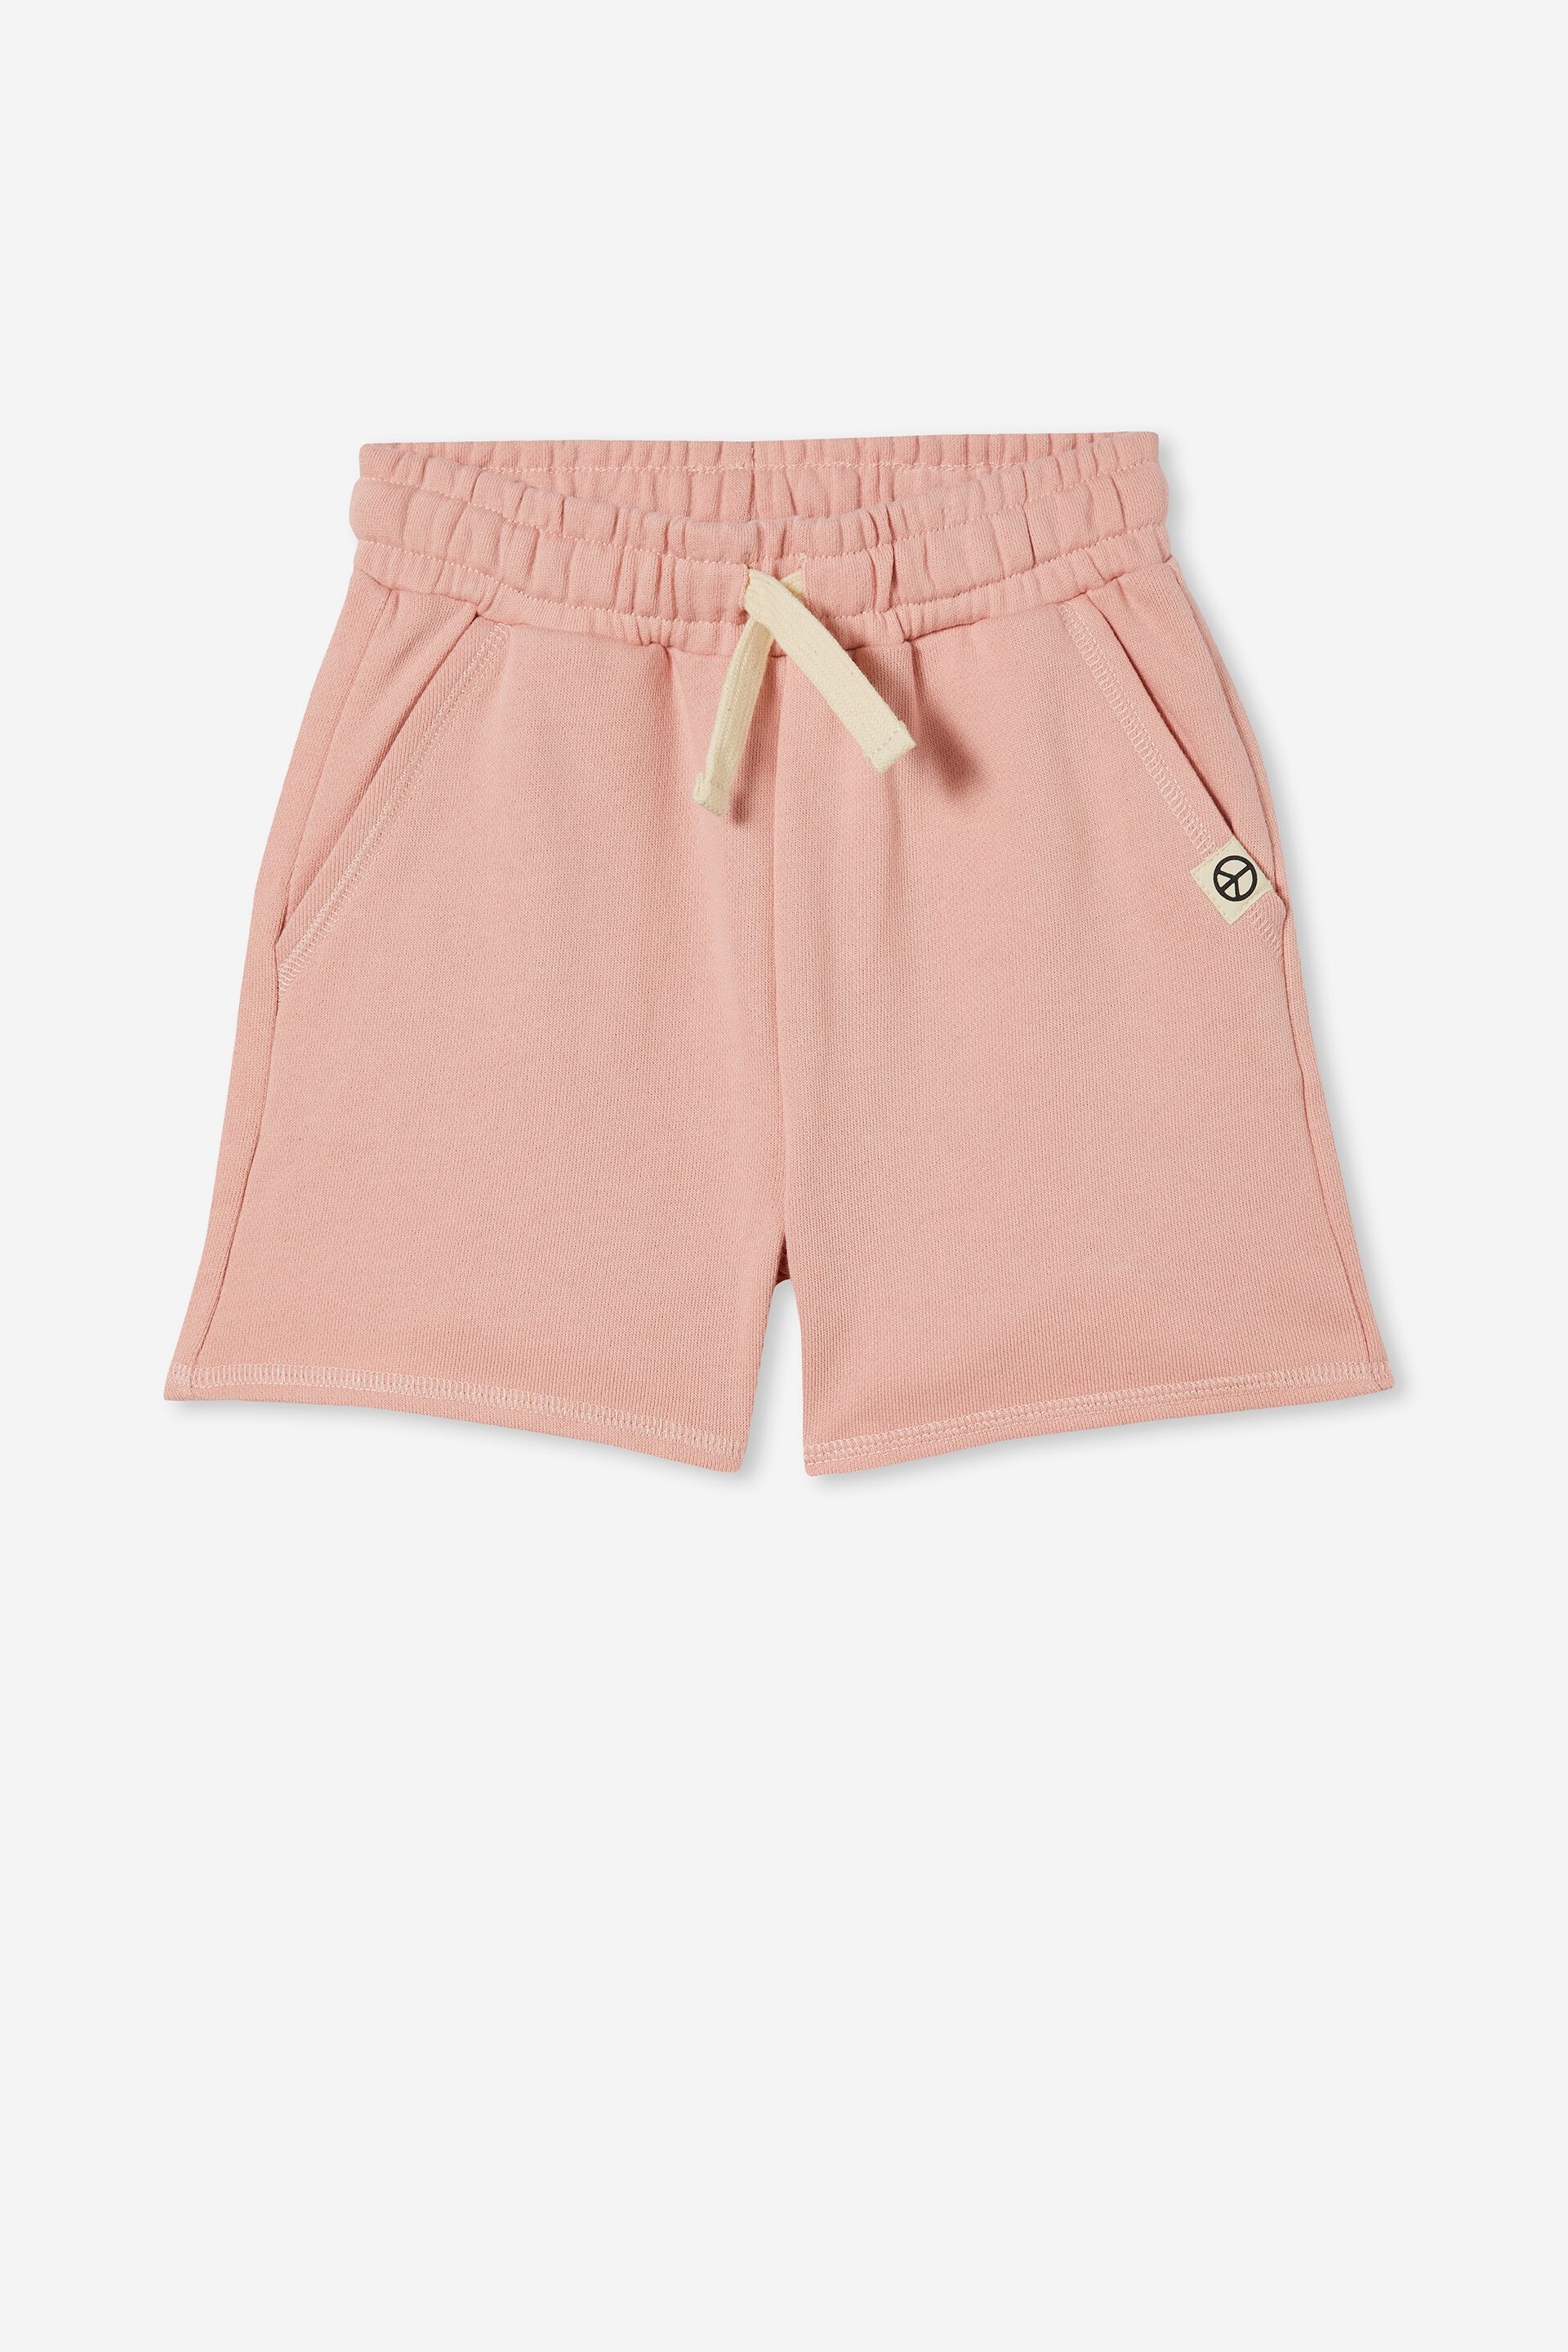 Girls 2-14 Shorts & Skirts | Unisex Organic Fleece Short - QZ59881